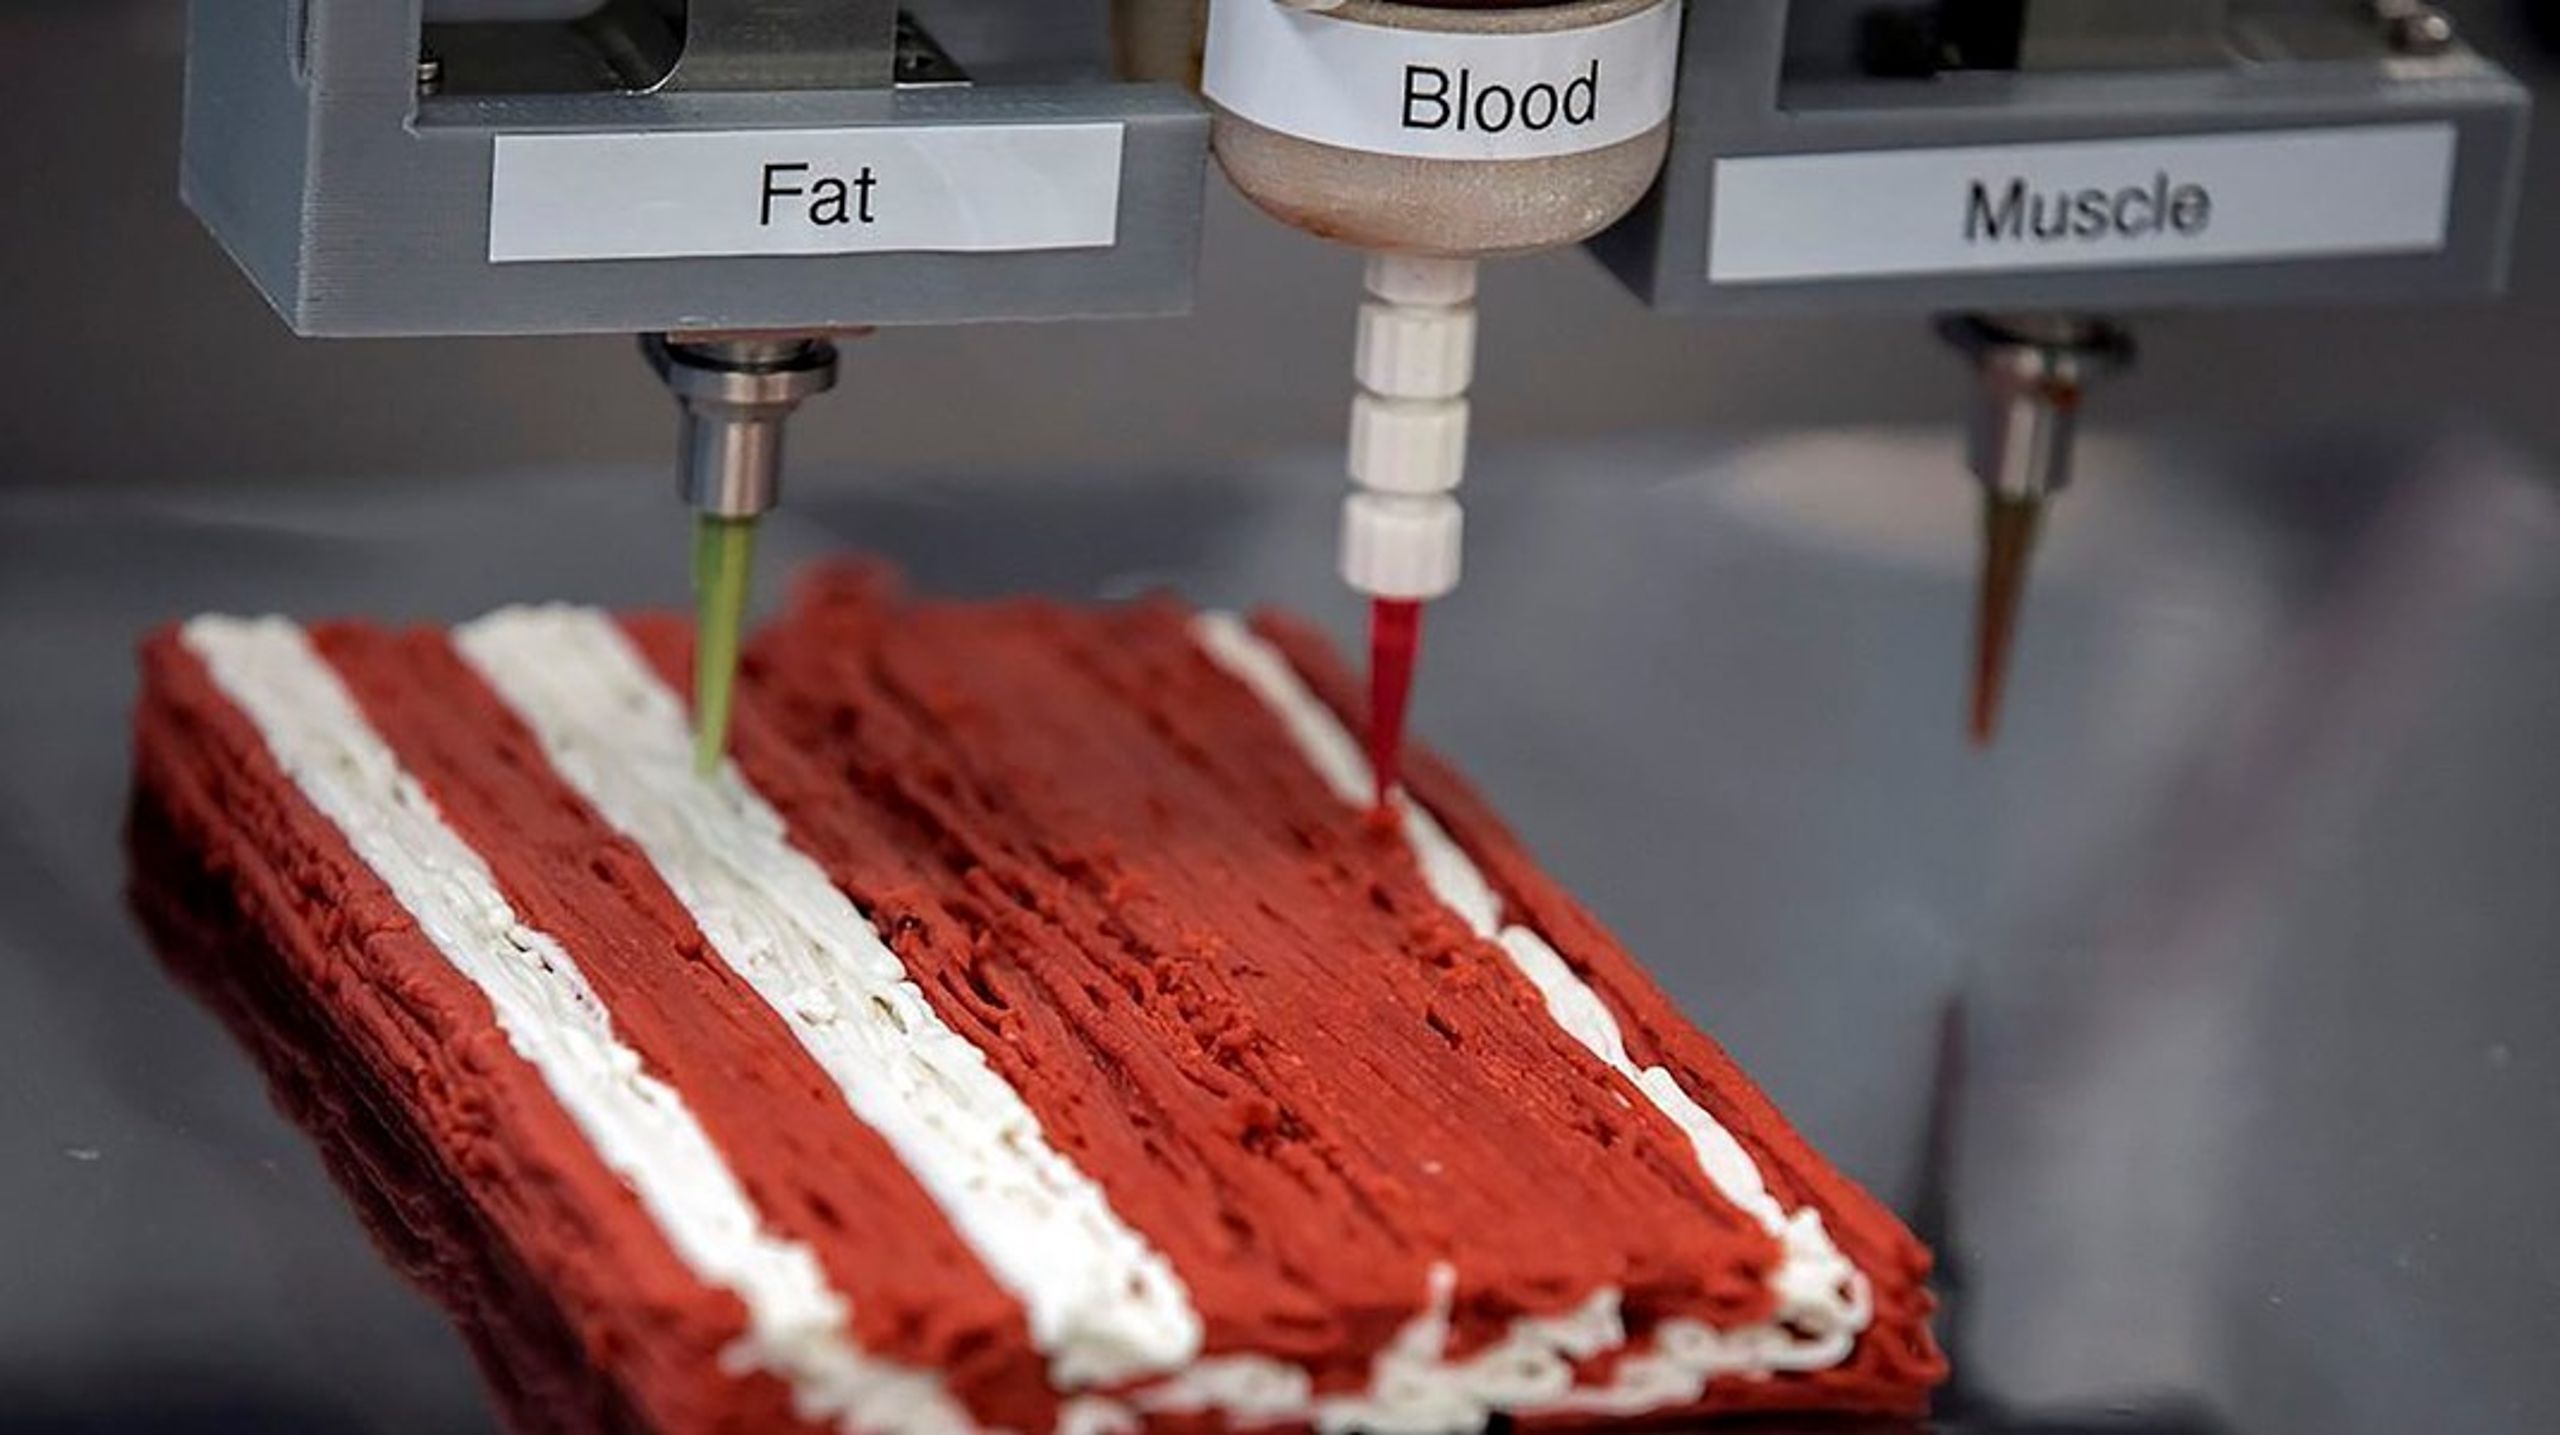 Redefine Meat bruger 3D print til at skabe de strukturer man kender&nbsp;fra en bøf - men med plantebaserede ingredienser